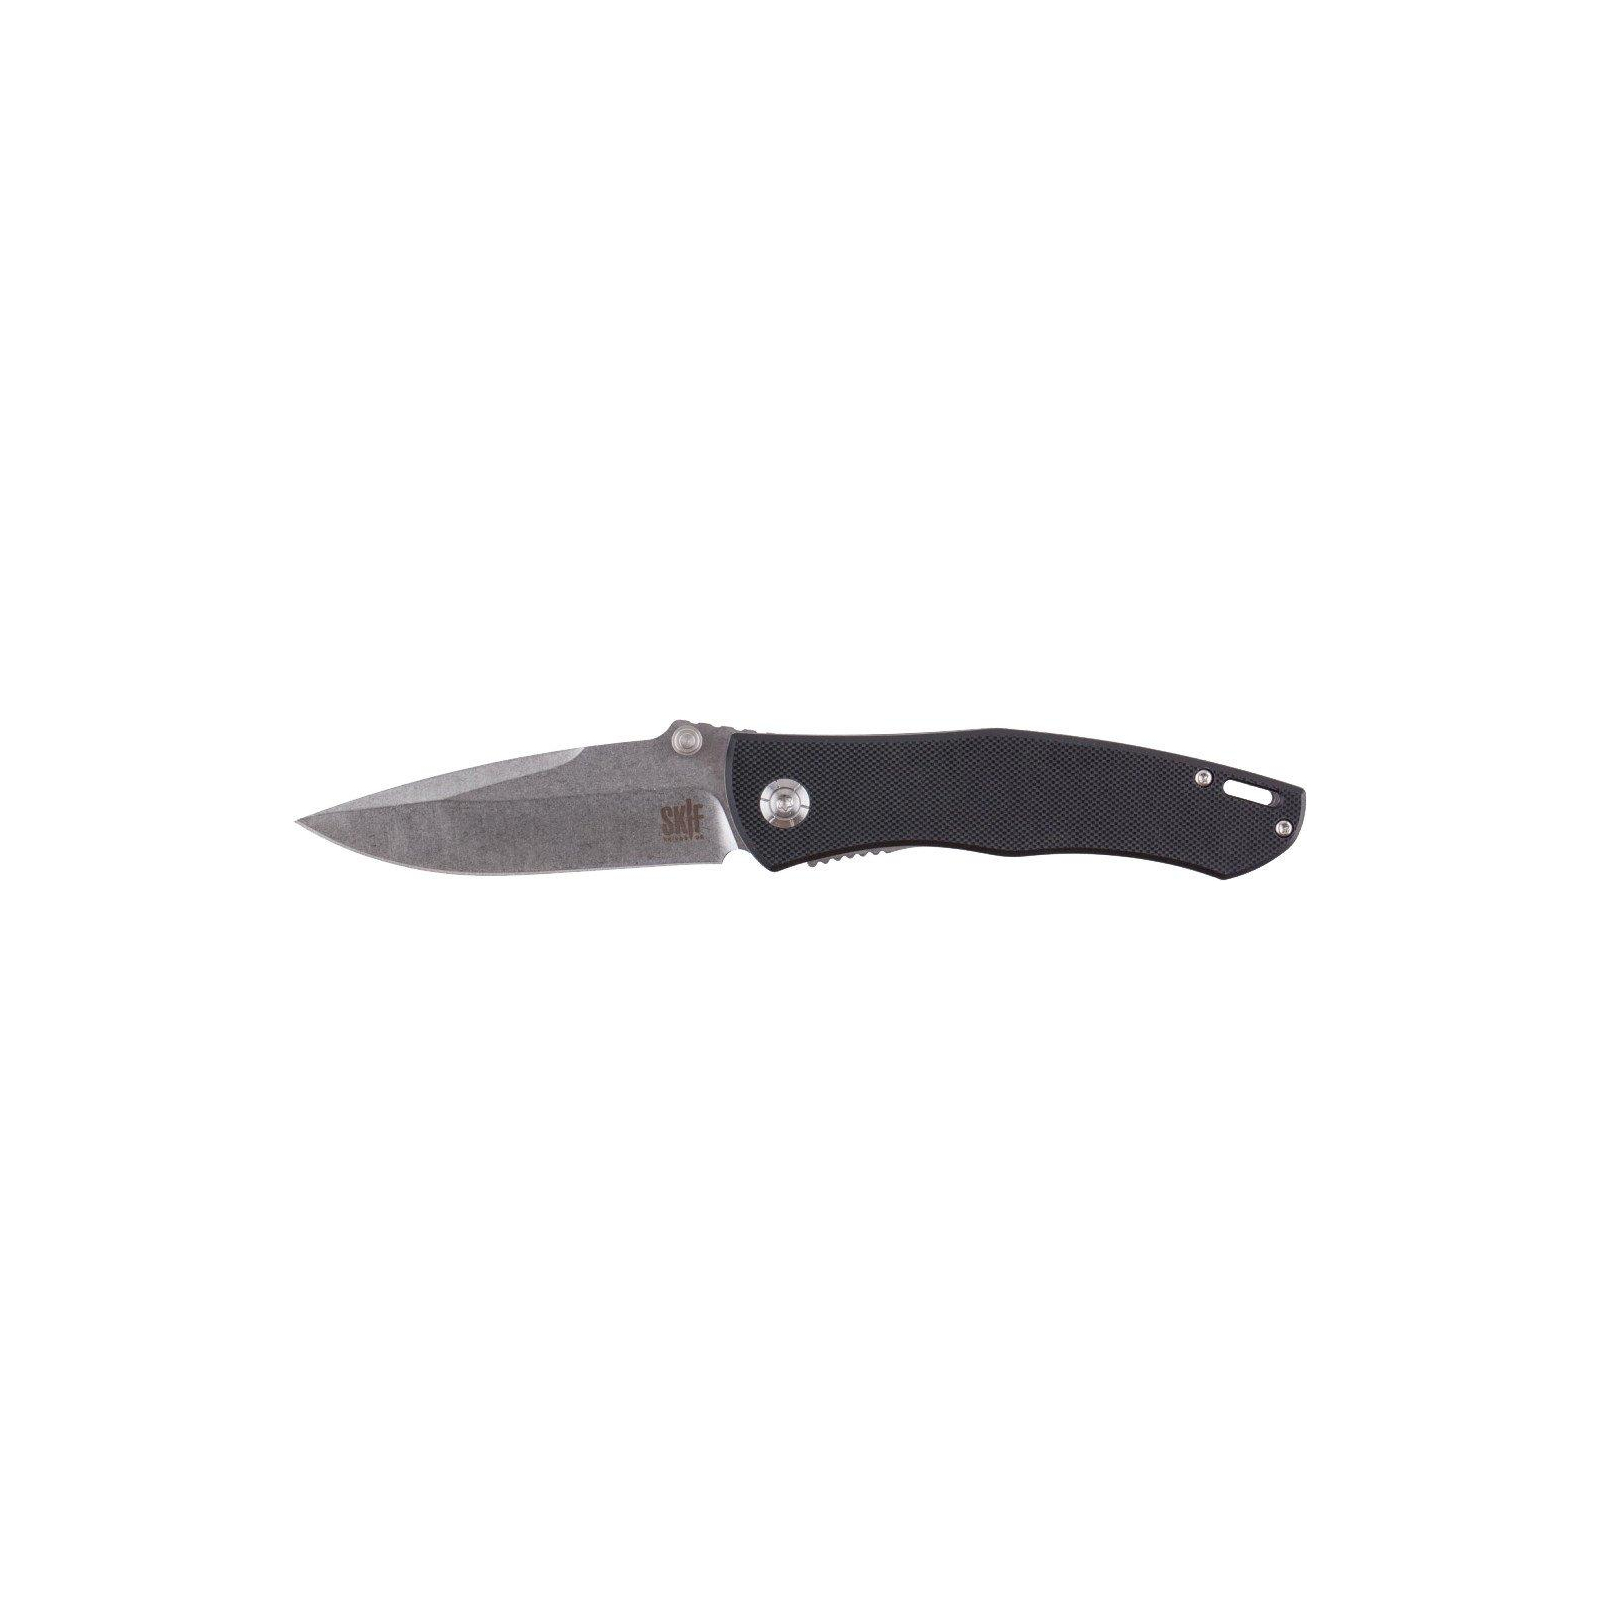 Нож Skif Swing black (IS-002B)